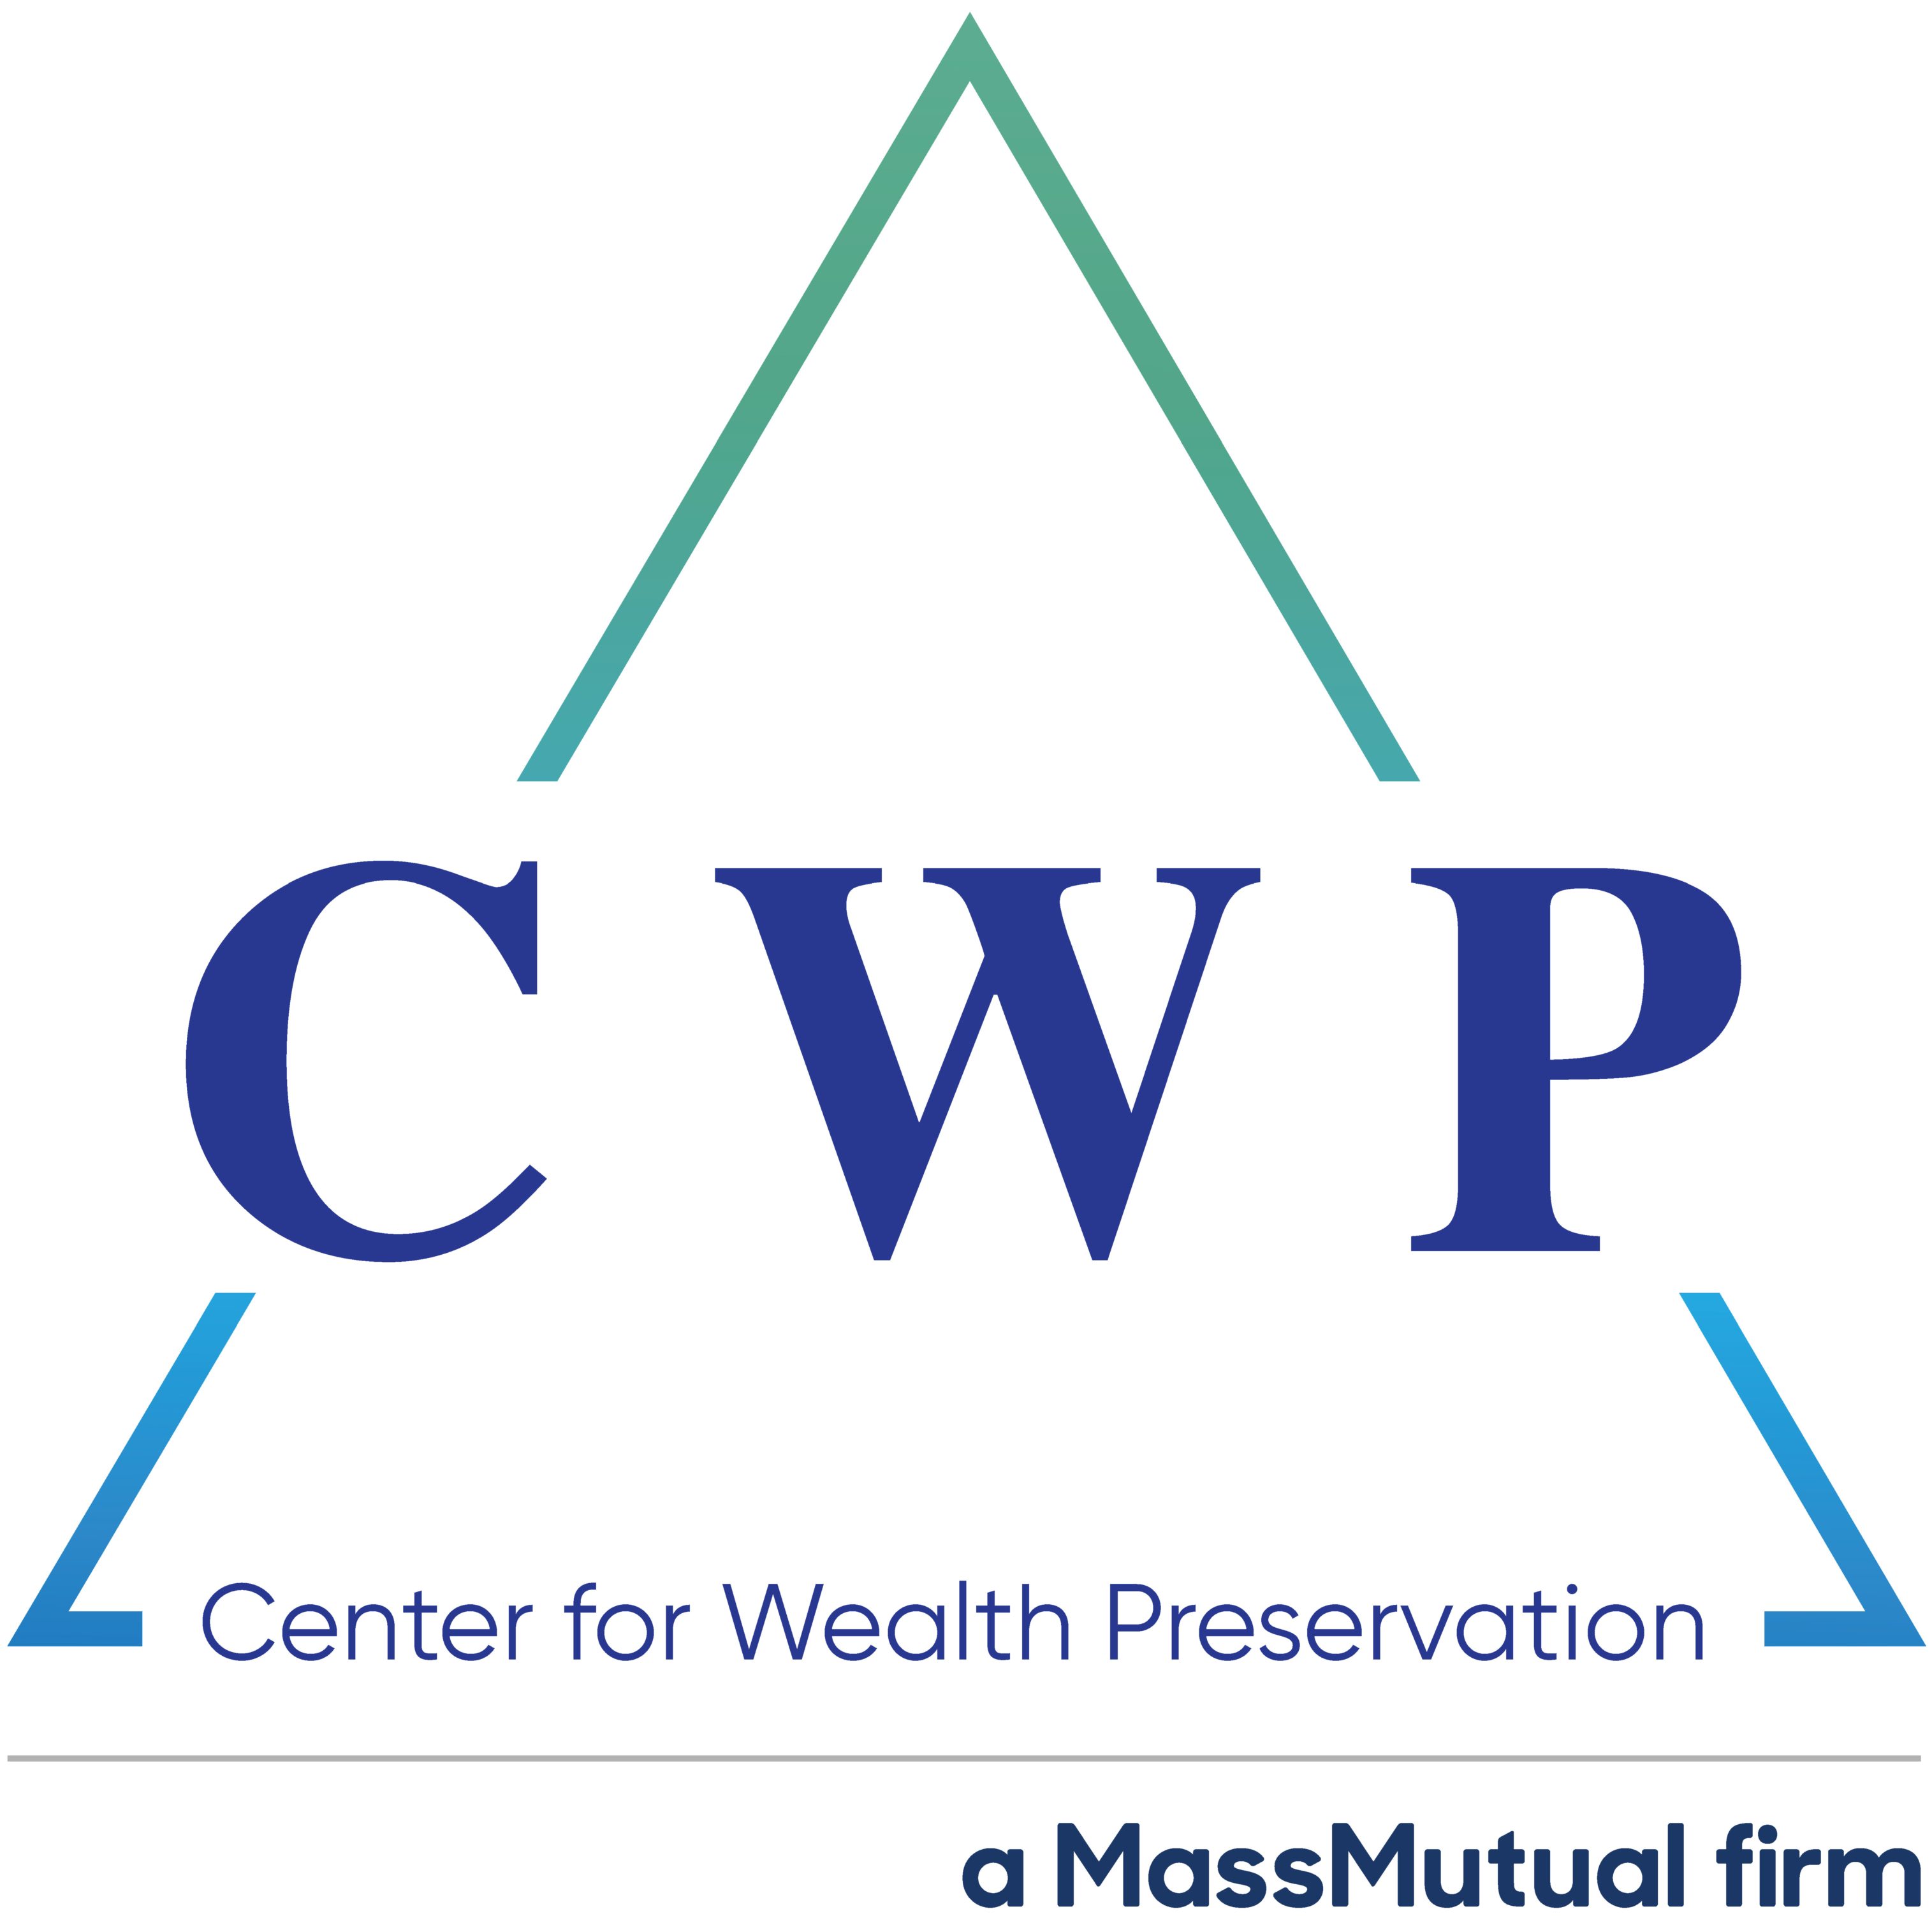 Center for Wealth Preservation logo